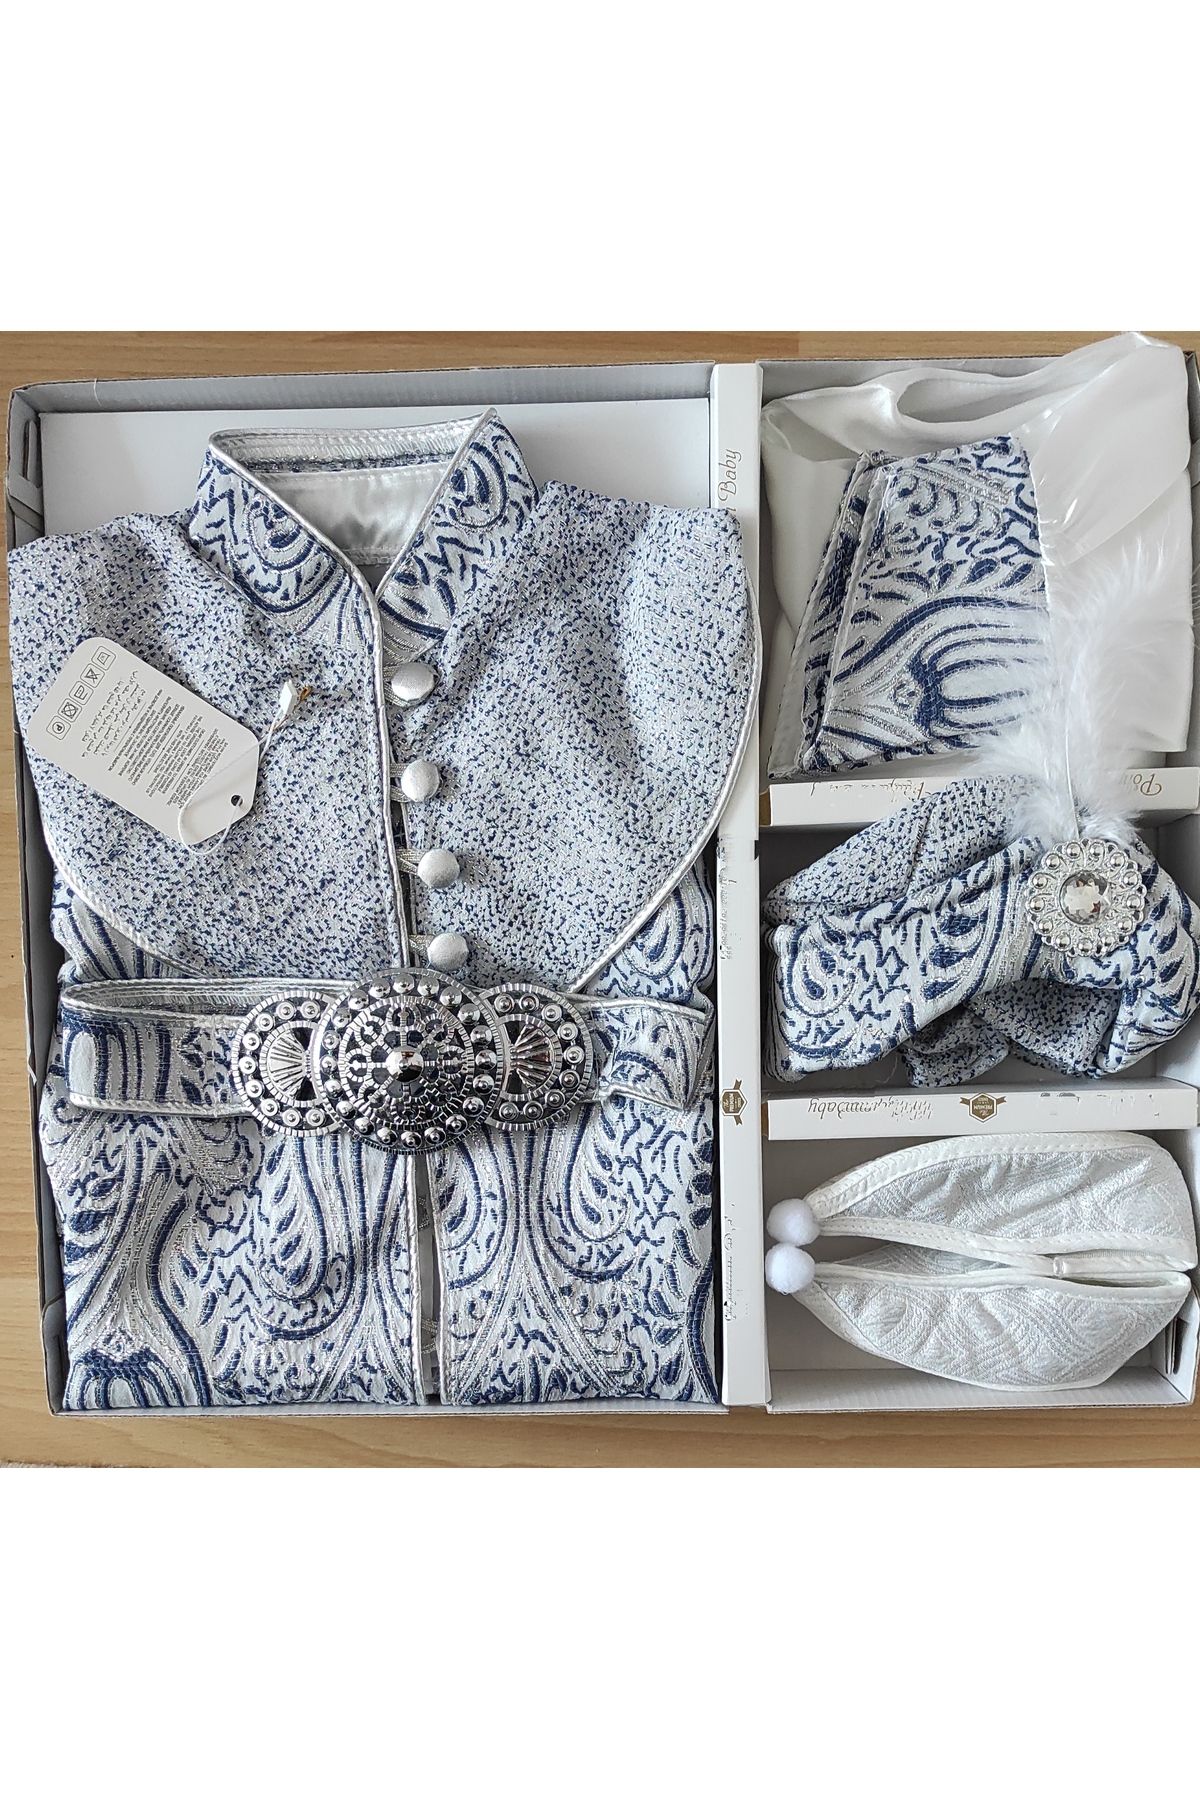 aykor tekstil Bebek Şehzade Sünnet ve Mevlüt Kıyafeti 6-10 kg